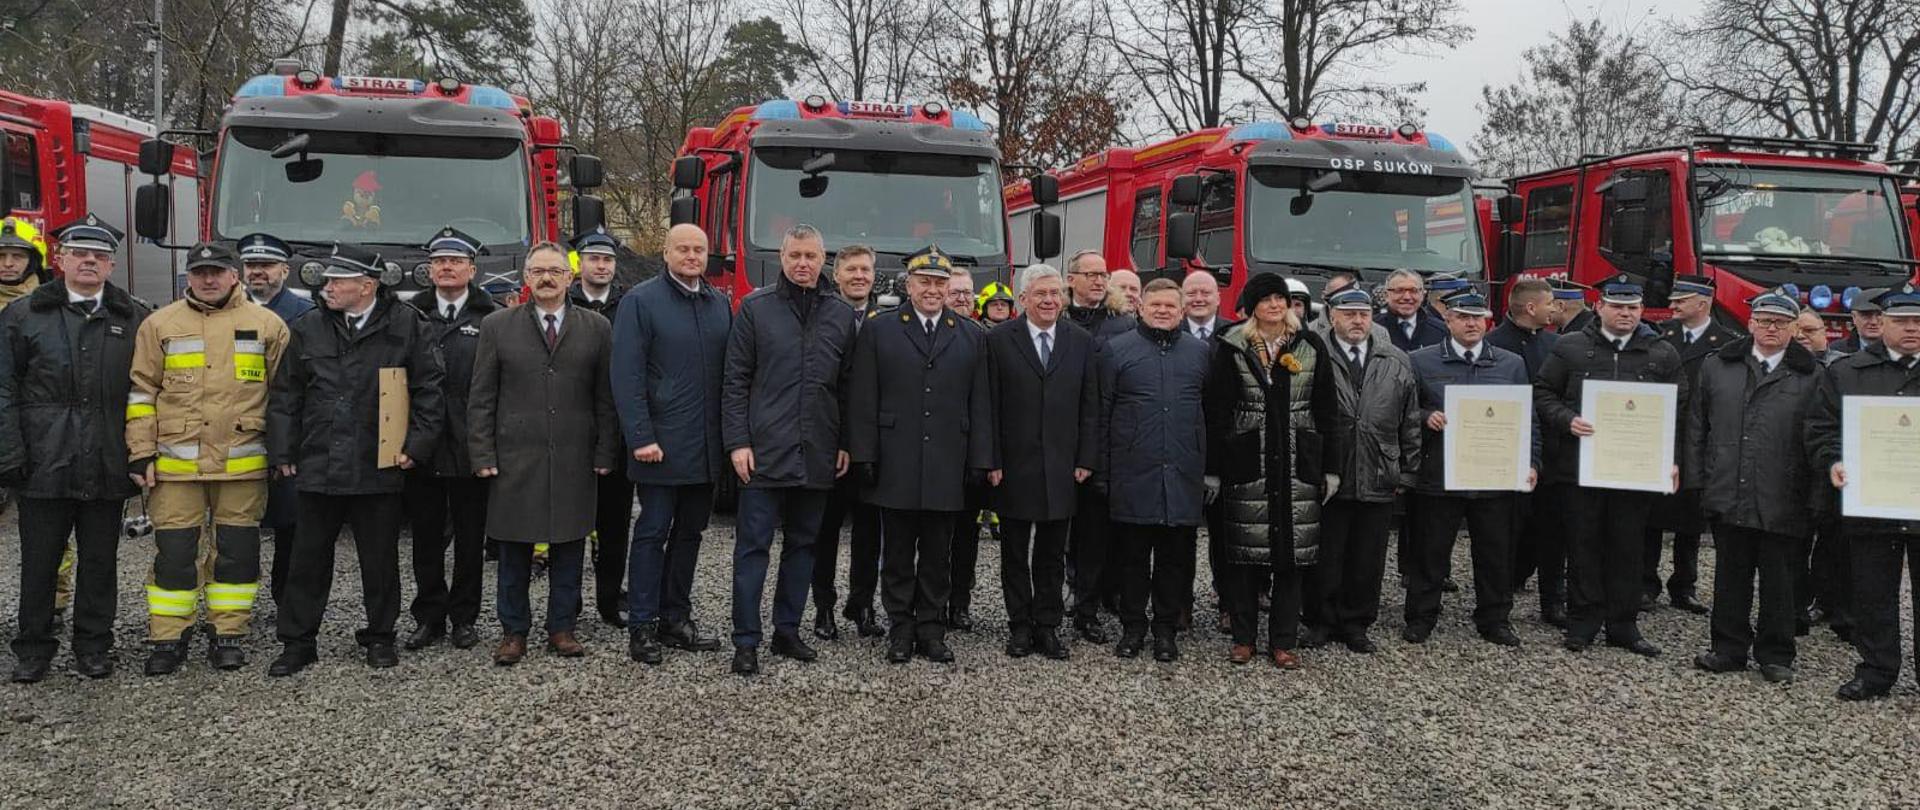 Delegacje regionu radomskiego, biorące udział w wydarzeniu na tle wozów bojowych straży pożarnej.